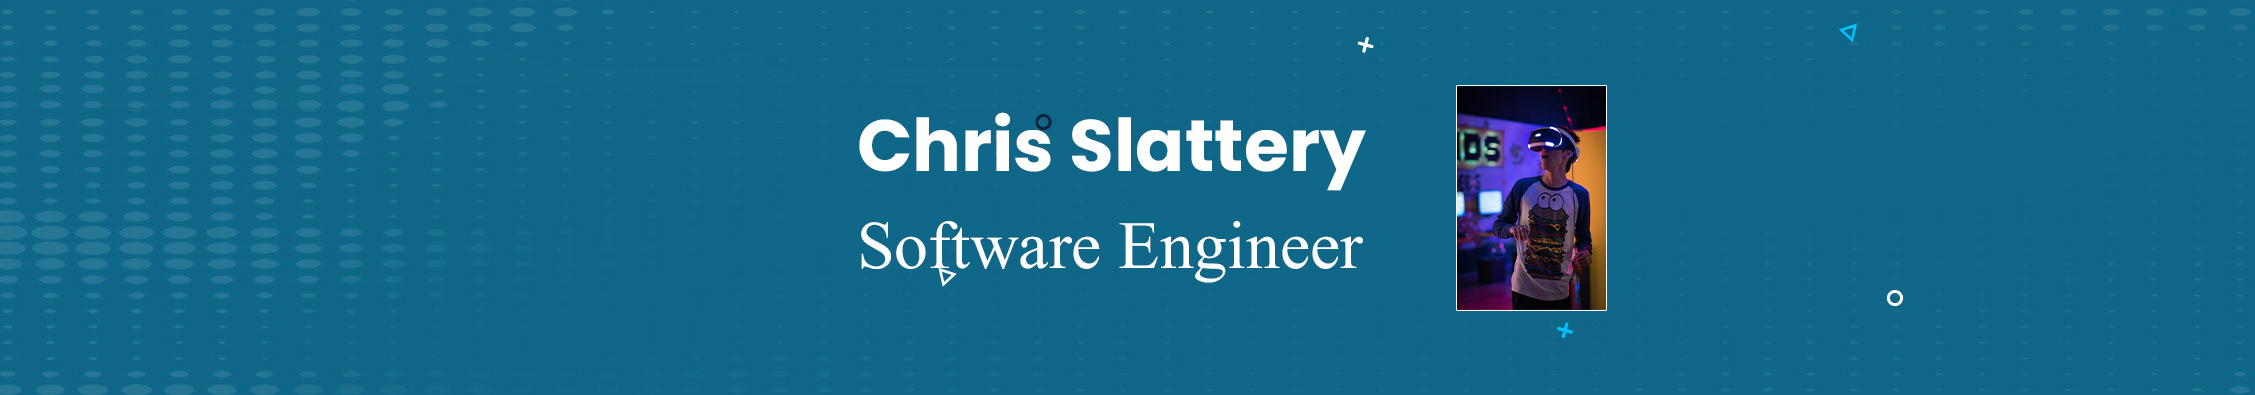 Chris Slattery's profile banner